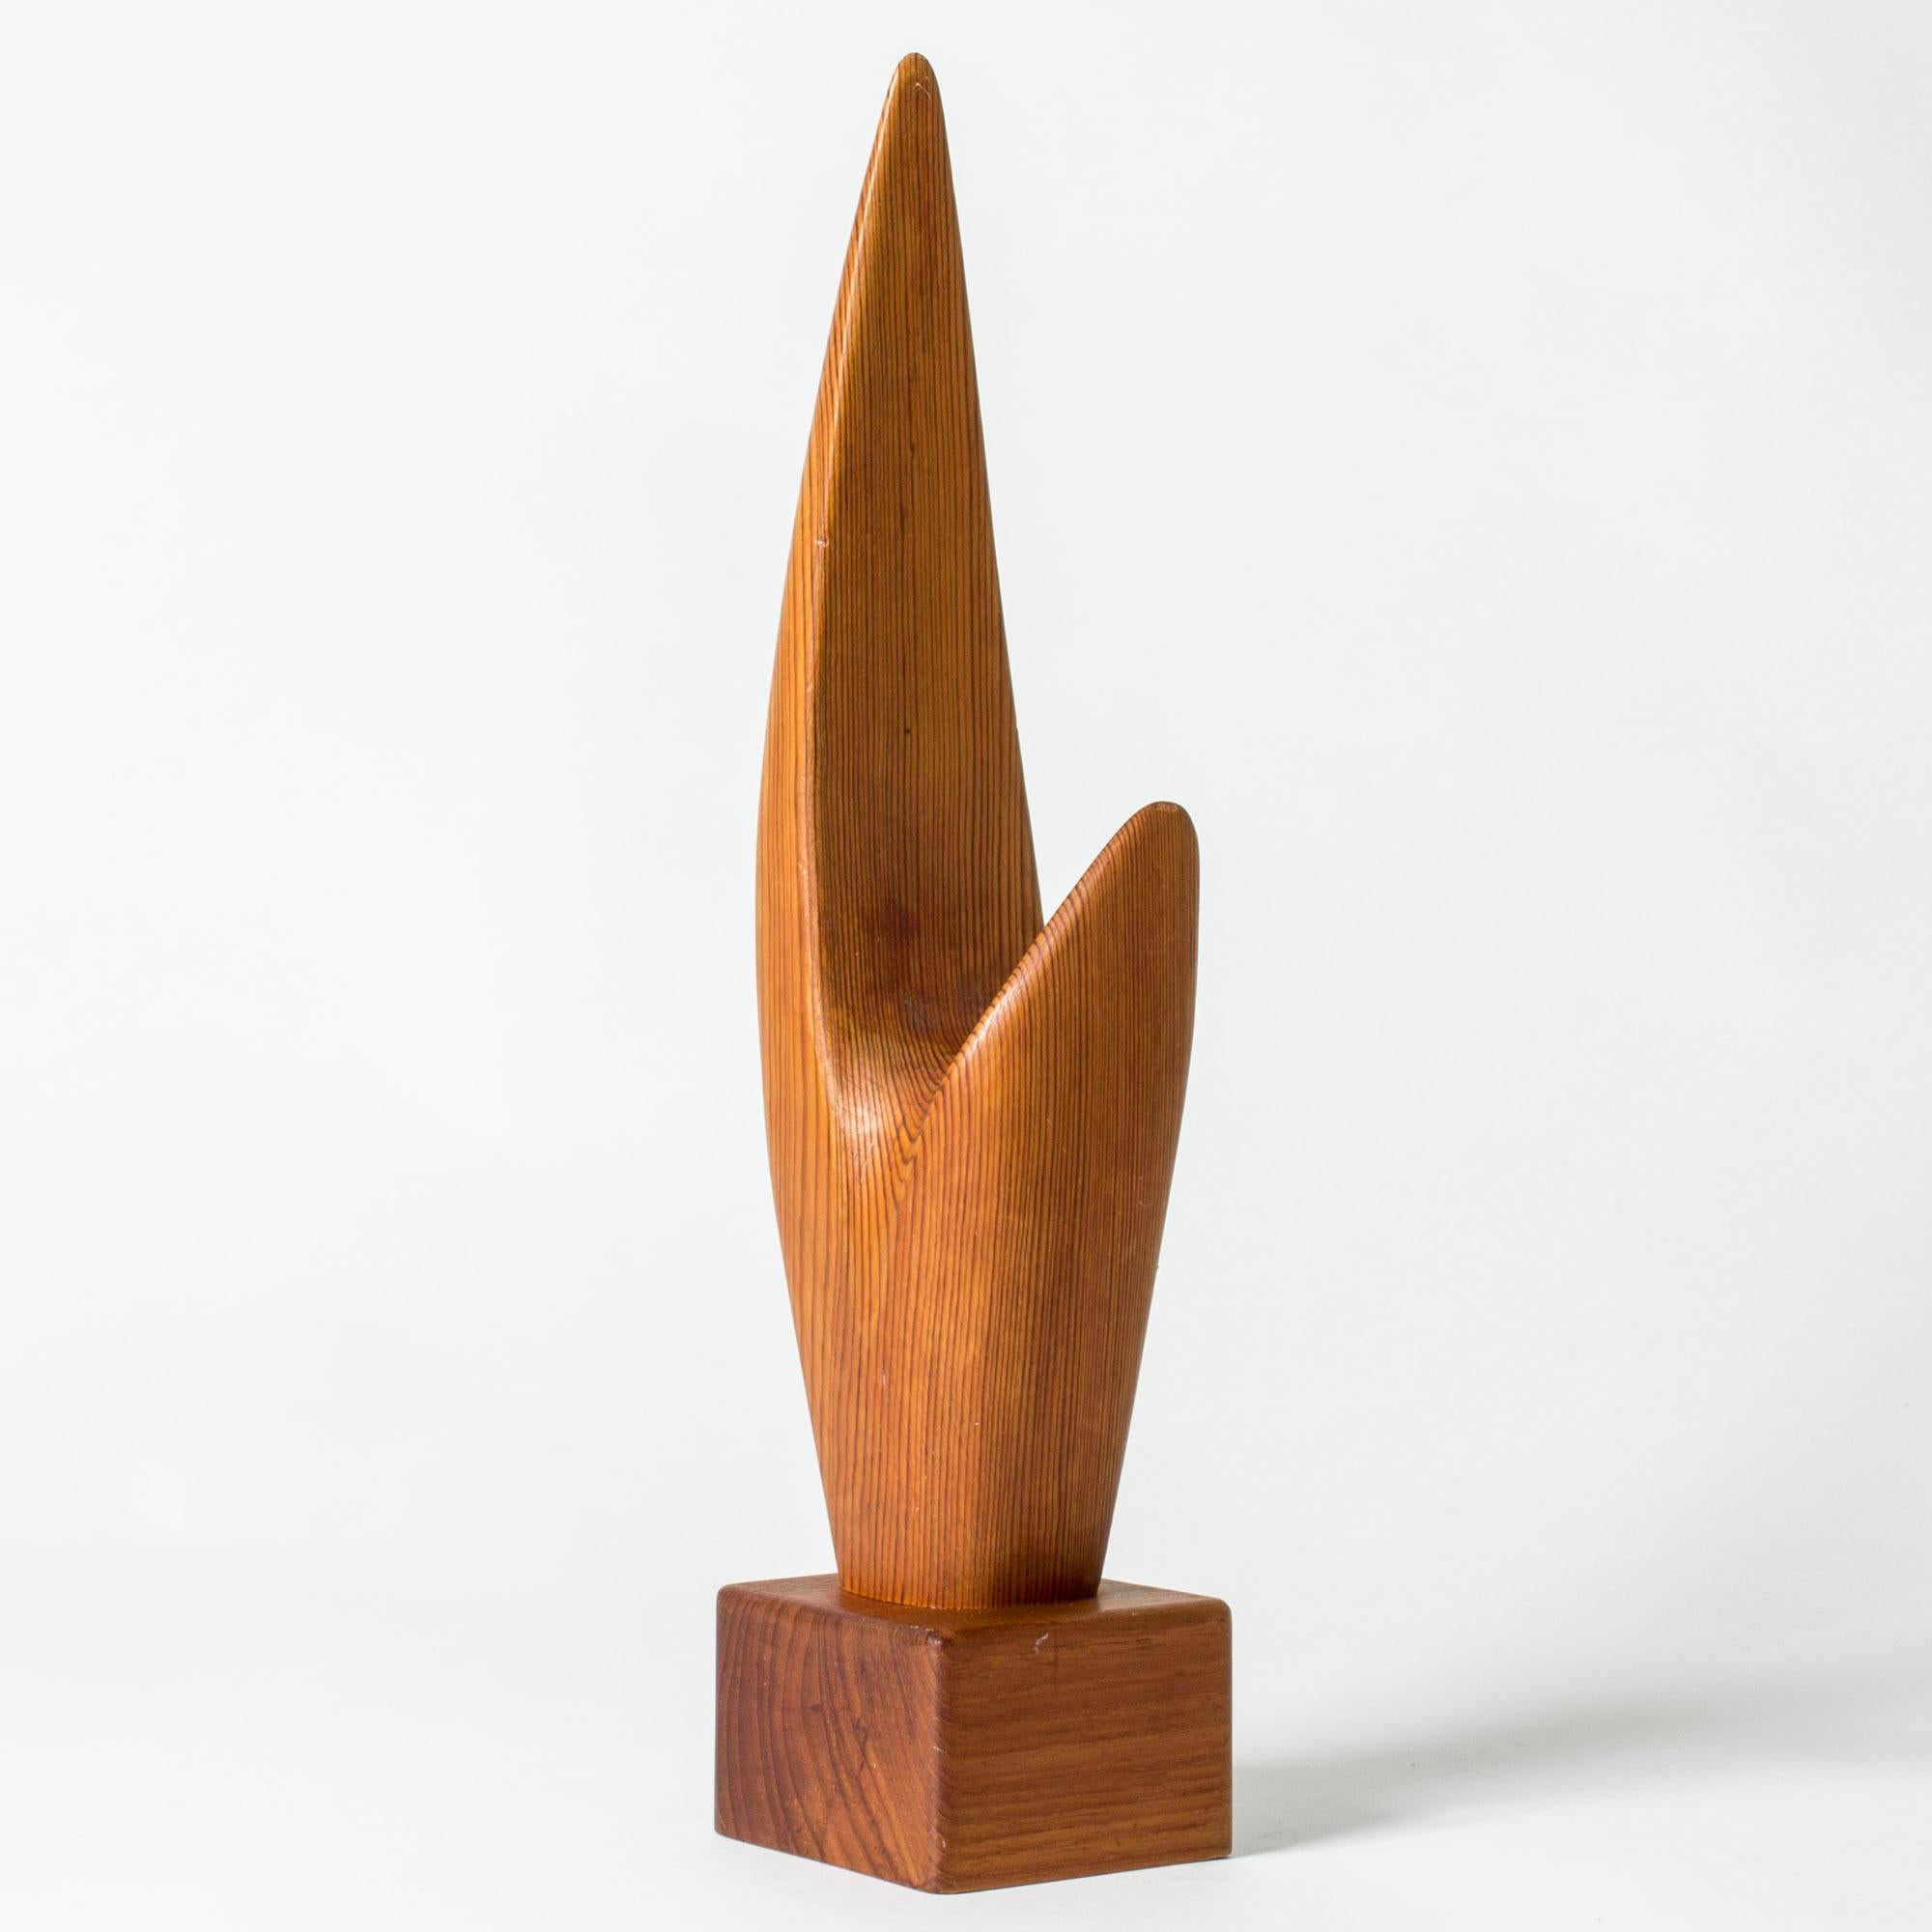 Auffällige Holzskulptur in abstrakter Form von Johnny Mattsson. Kiefer auf einem Sockel aus Teakholz. Die Form der Skulptur folgt in schöner Weise der Maserung des Kiefernholzes.